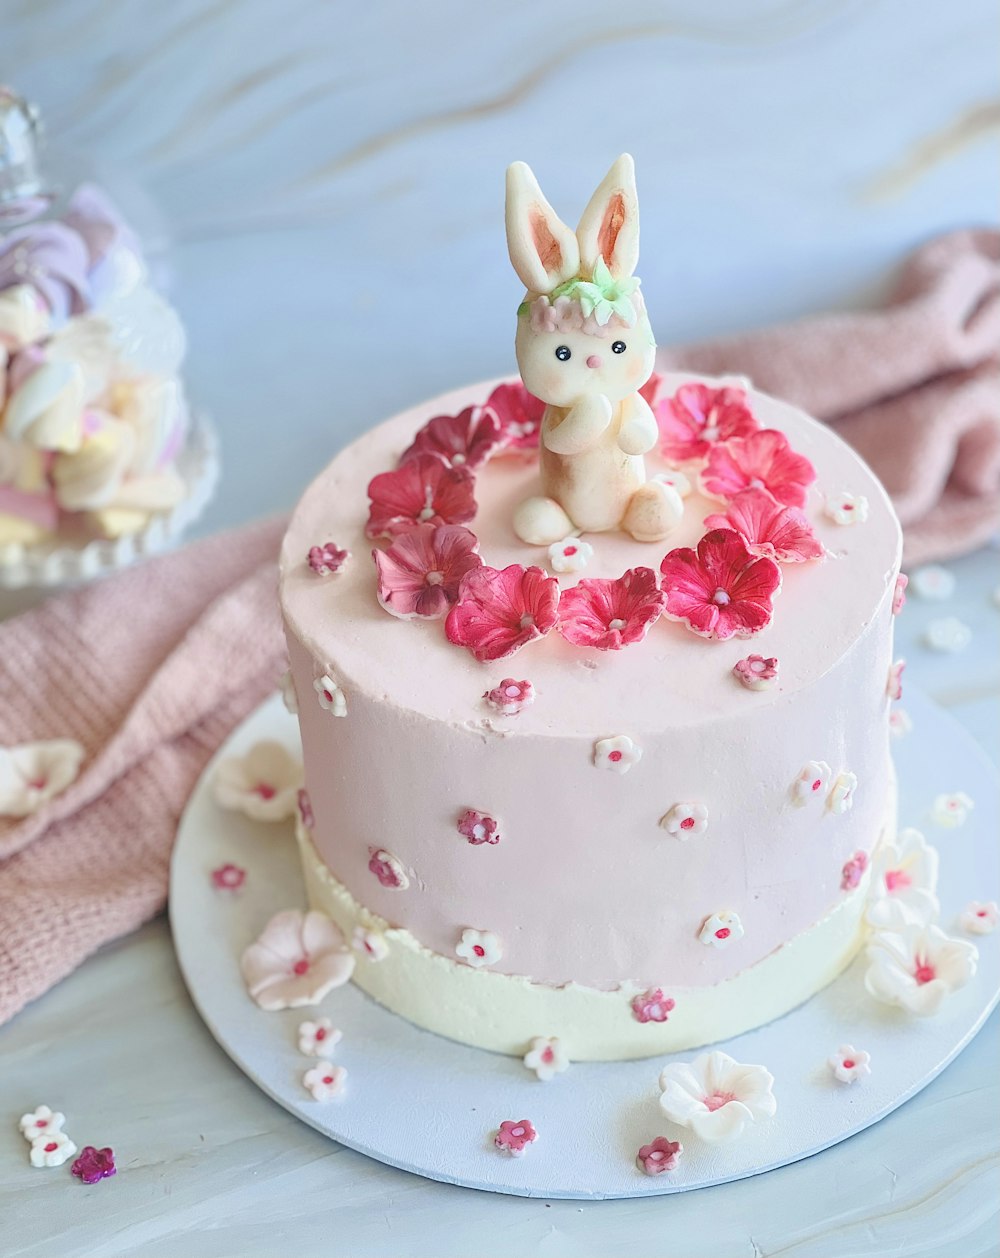 その上にウサギの置物が付いたピンクのケーキ